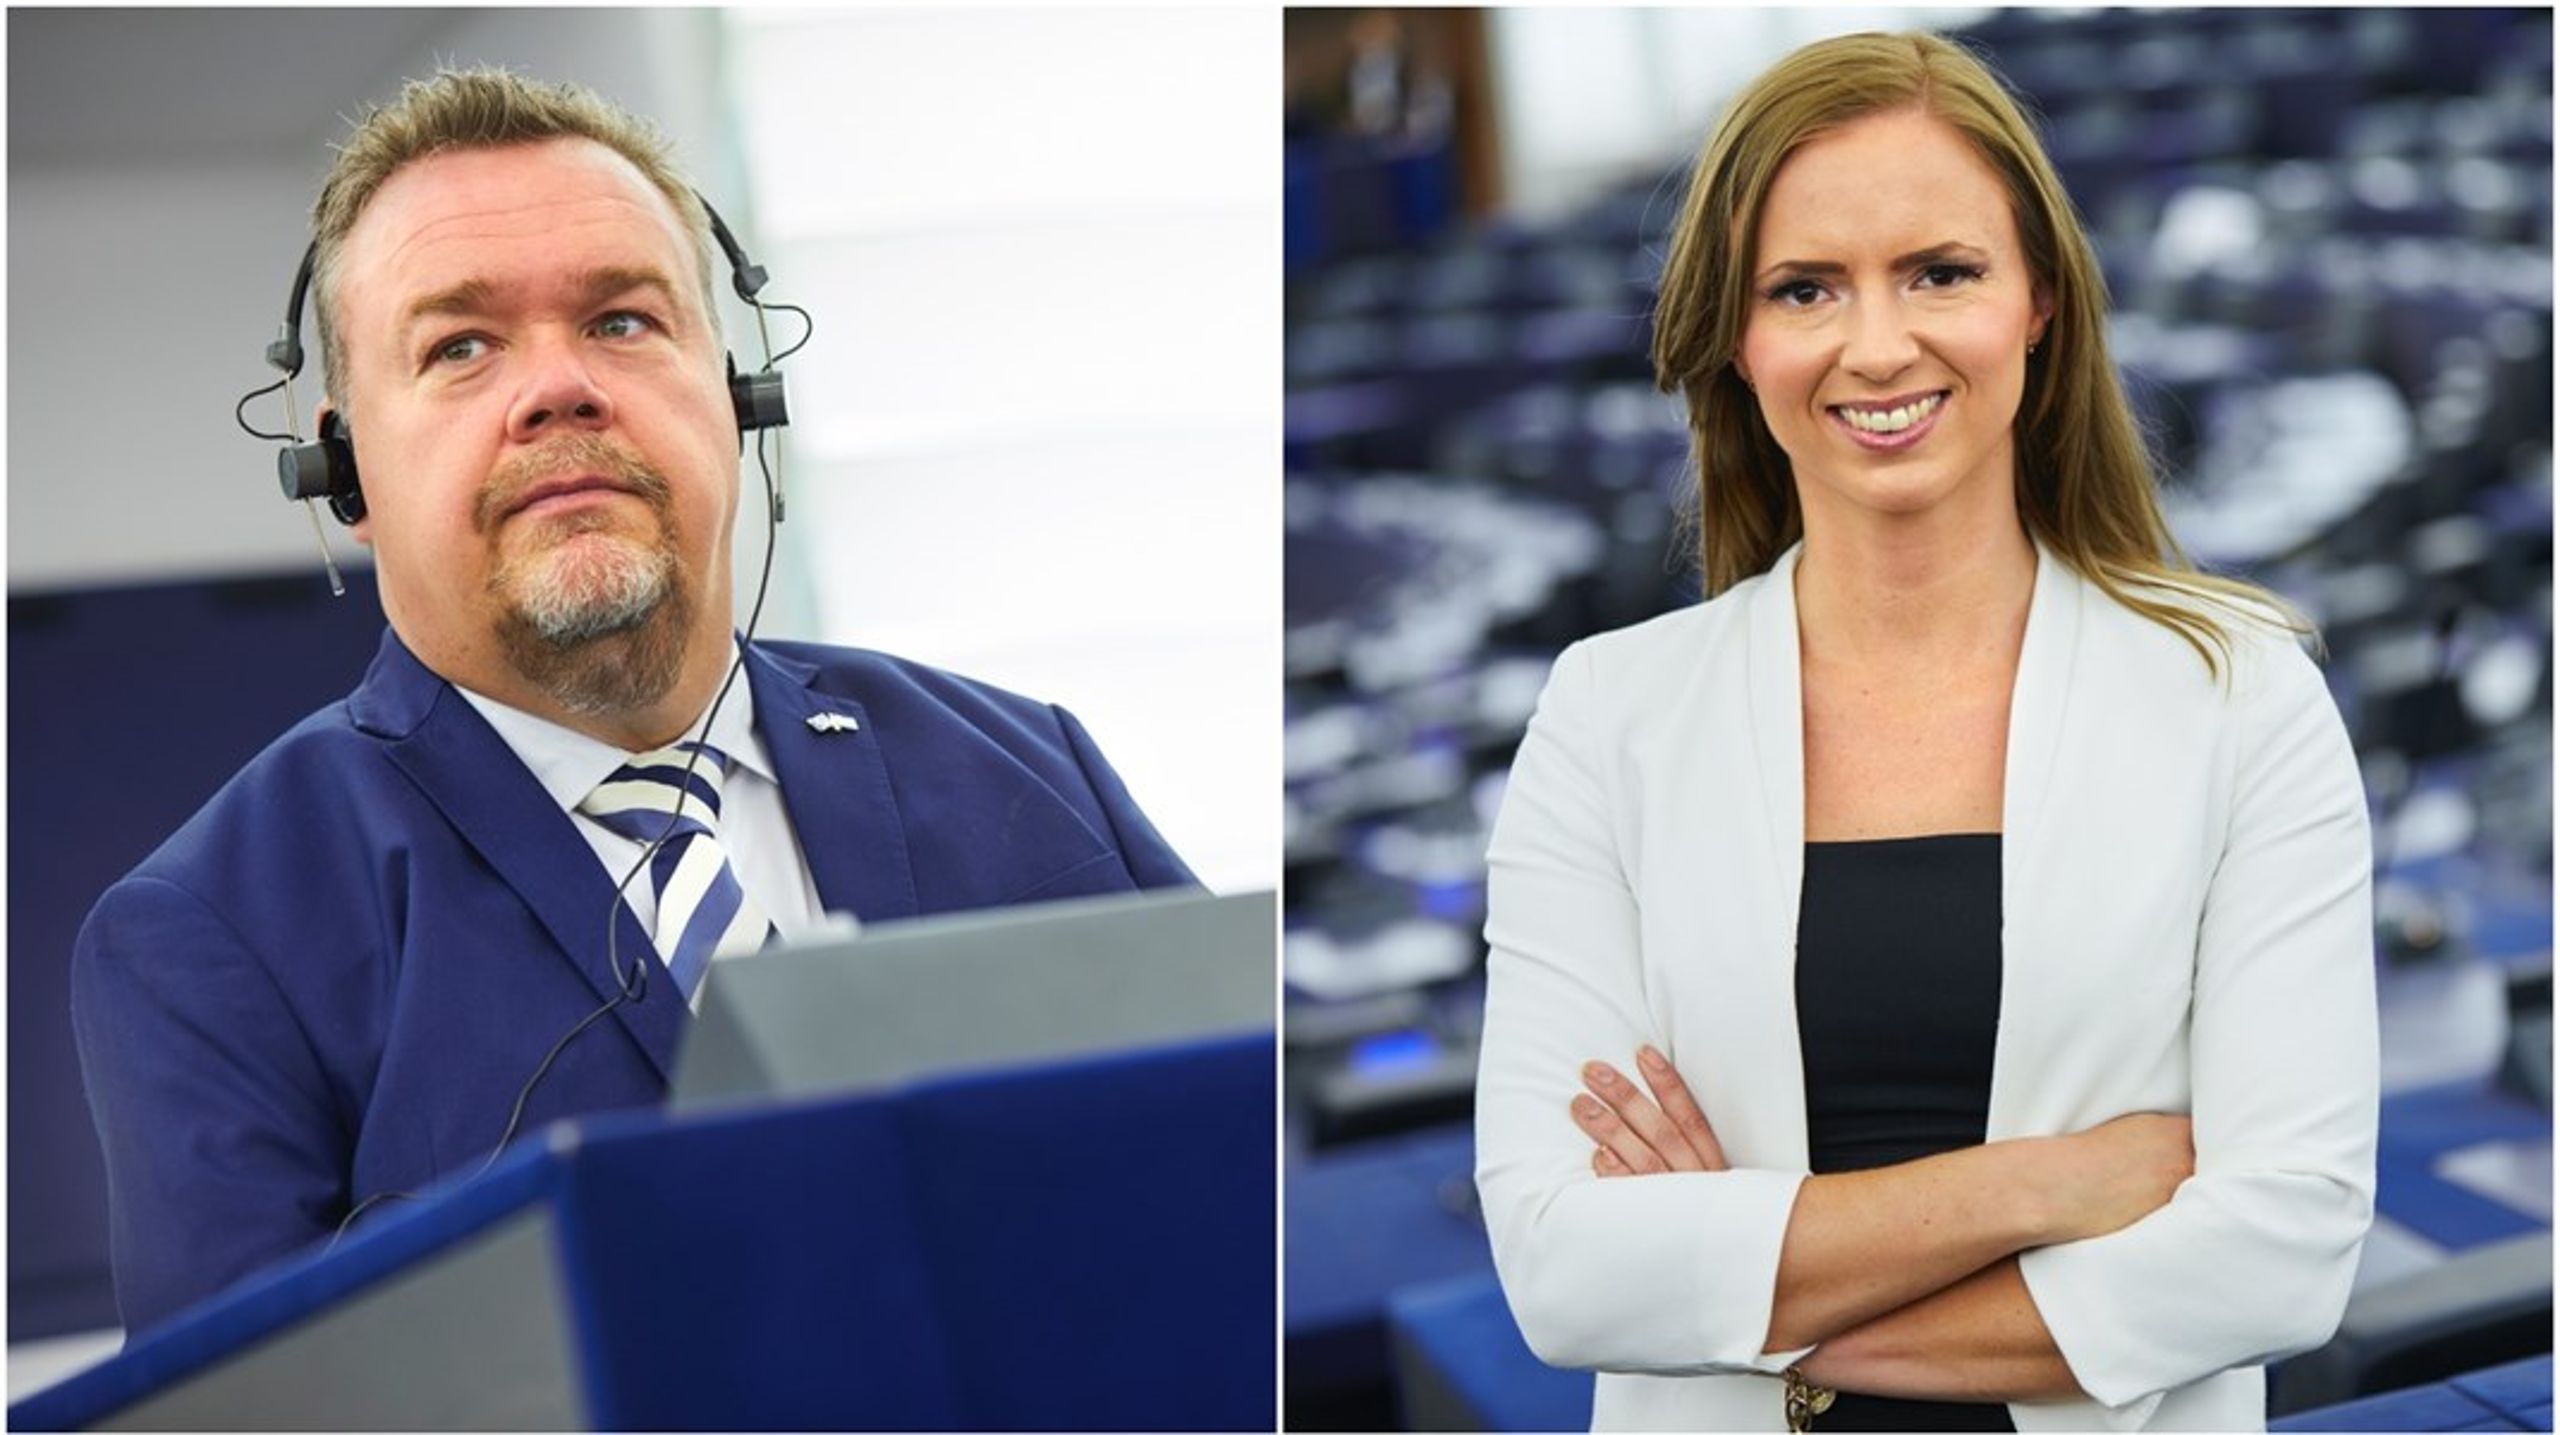 Kristdemokraterna David Lega och Sara skyttedal valdes båda in i Europaparlamentet för första gången&nbsp;i valet 2019 – och båda ställer upp för omval 2024.&nbsp;